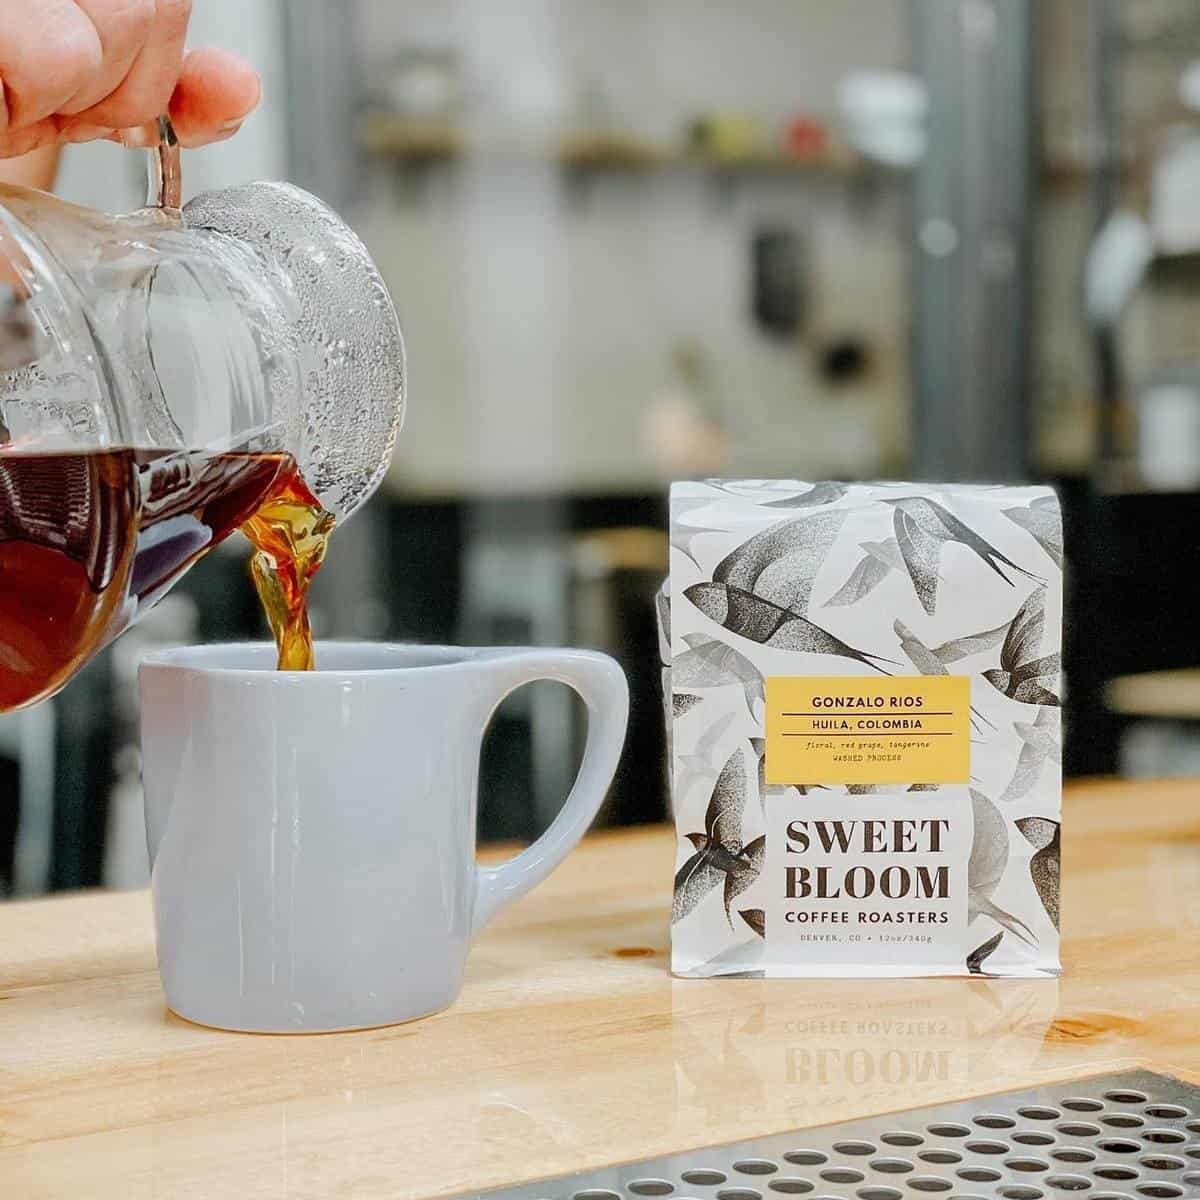 Sweet Bloom Coffee